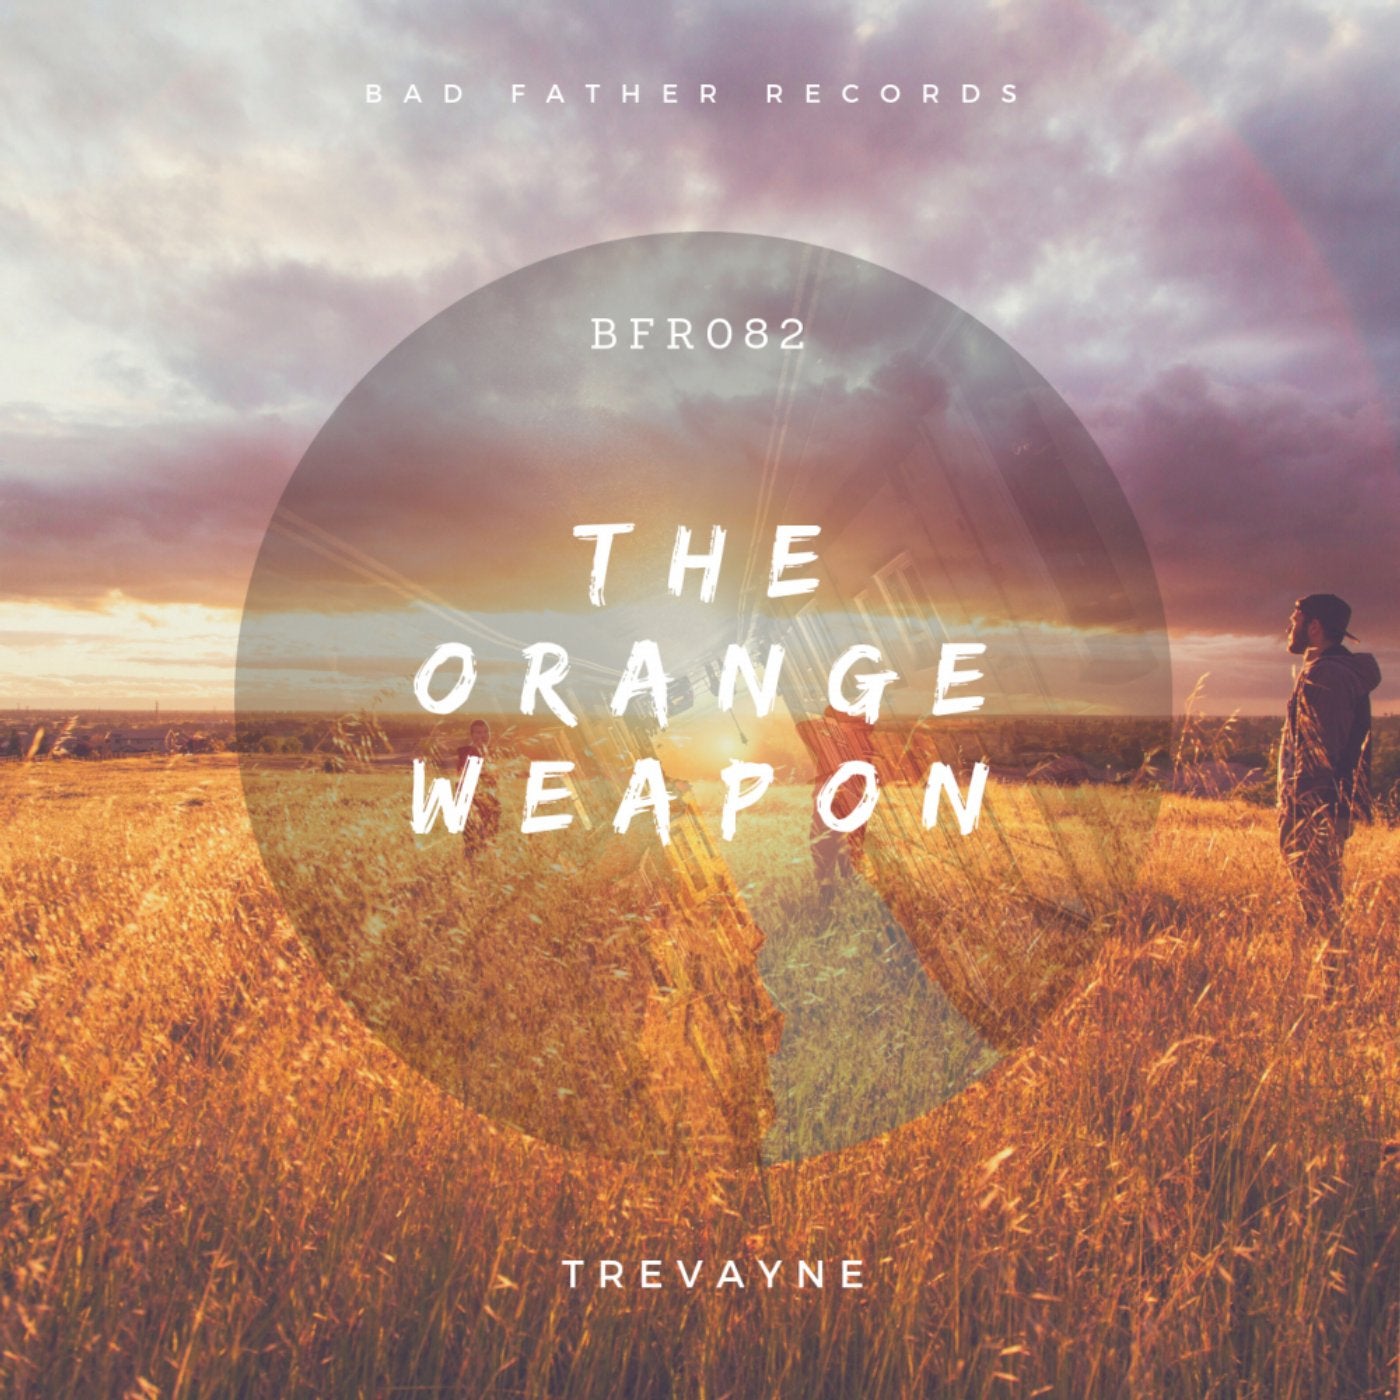 The Orange Weapon